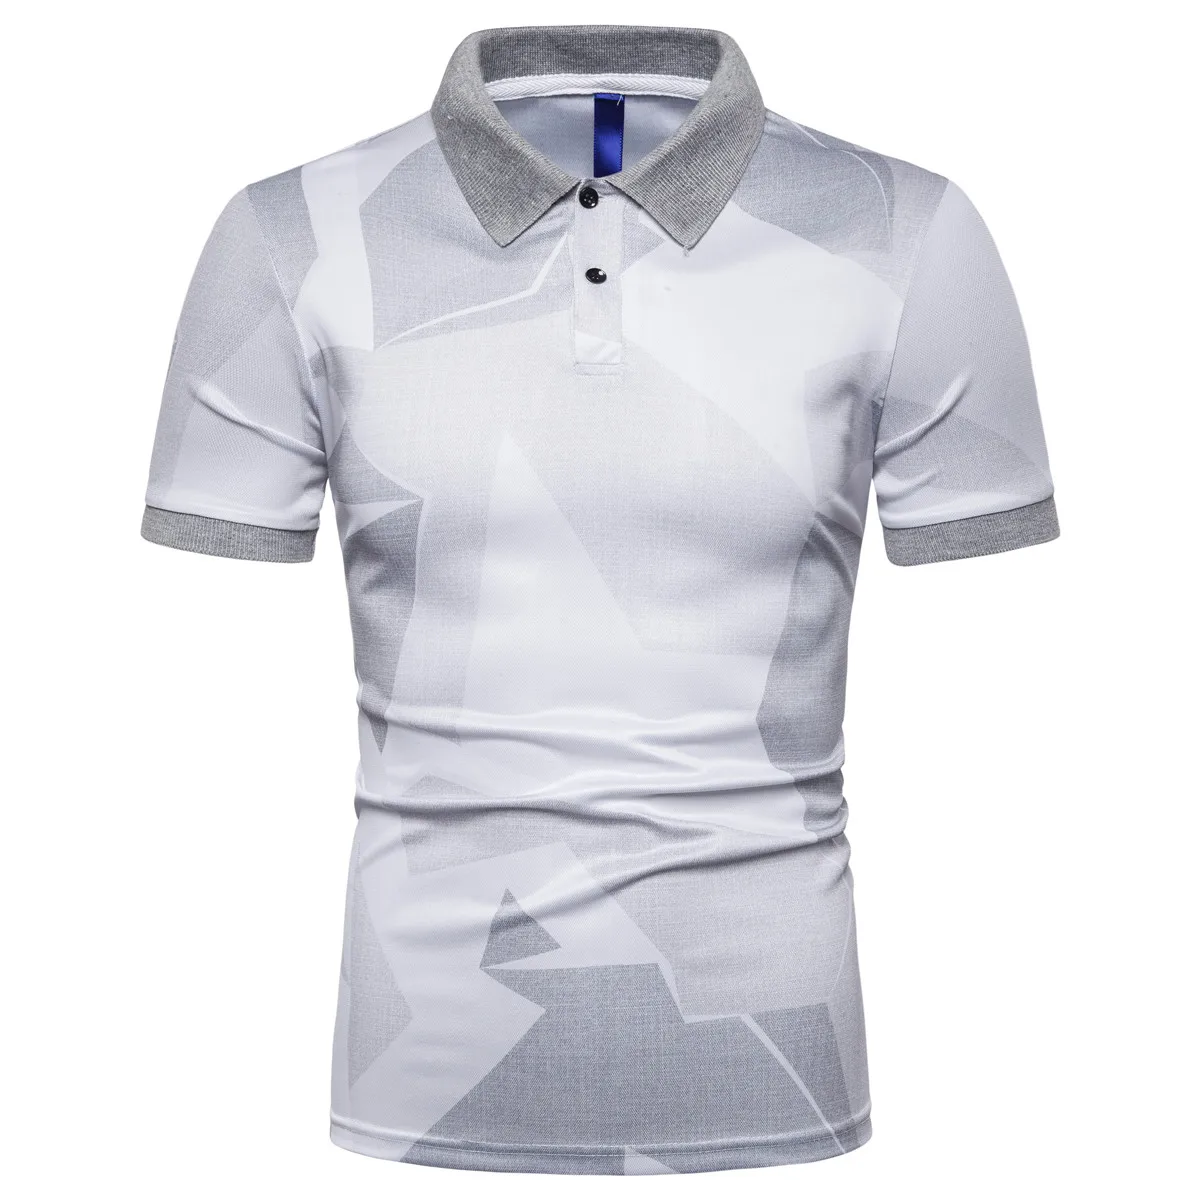 Miicoopie мужские рубашки поло с коротким рукавом большие области в цветные кадраты повседневные брендовые рубашки поло